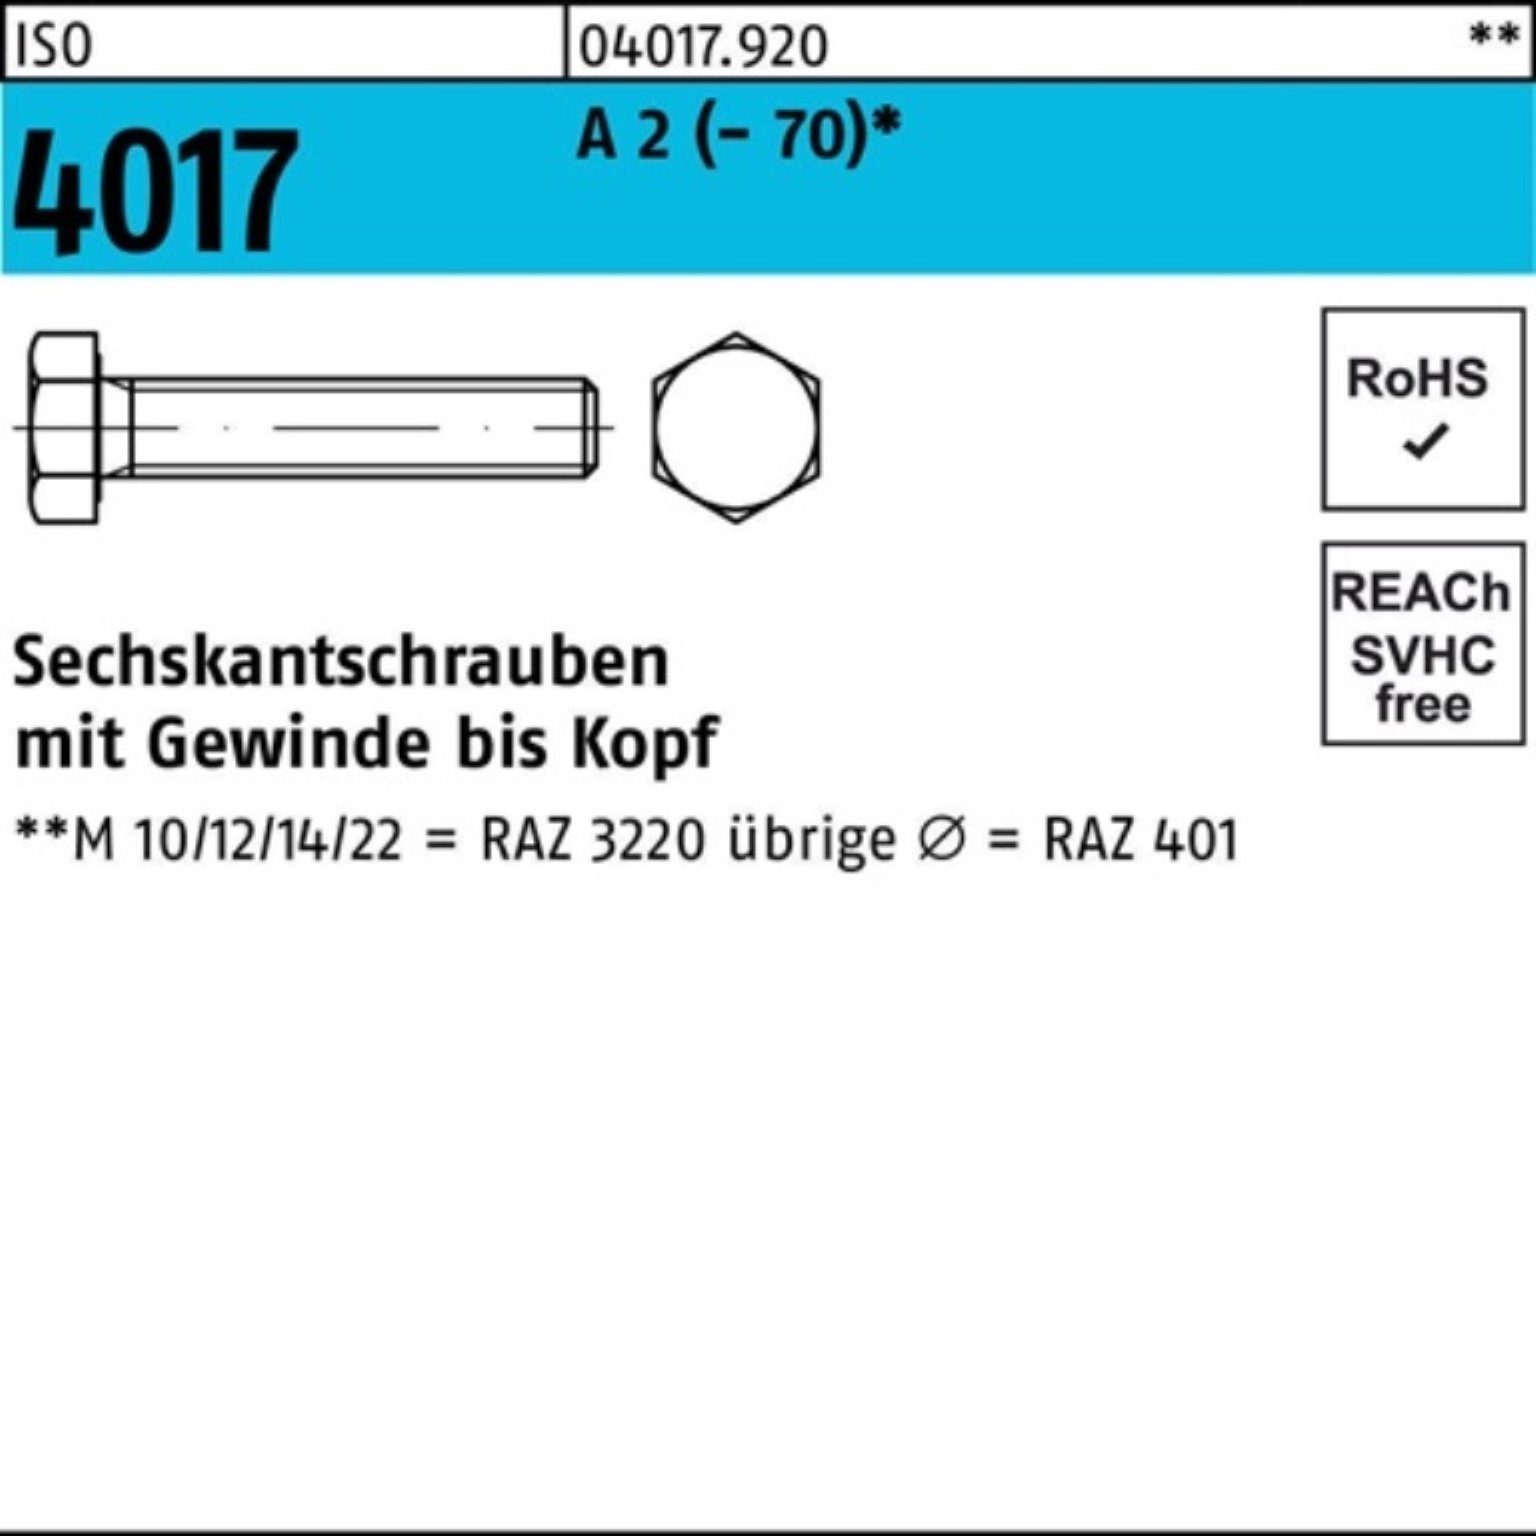 Bufab Sechskantschraube 100er Pack Sechskantschraube ISO 4017 VG M6x 110 A 2 (70) 100 Stück